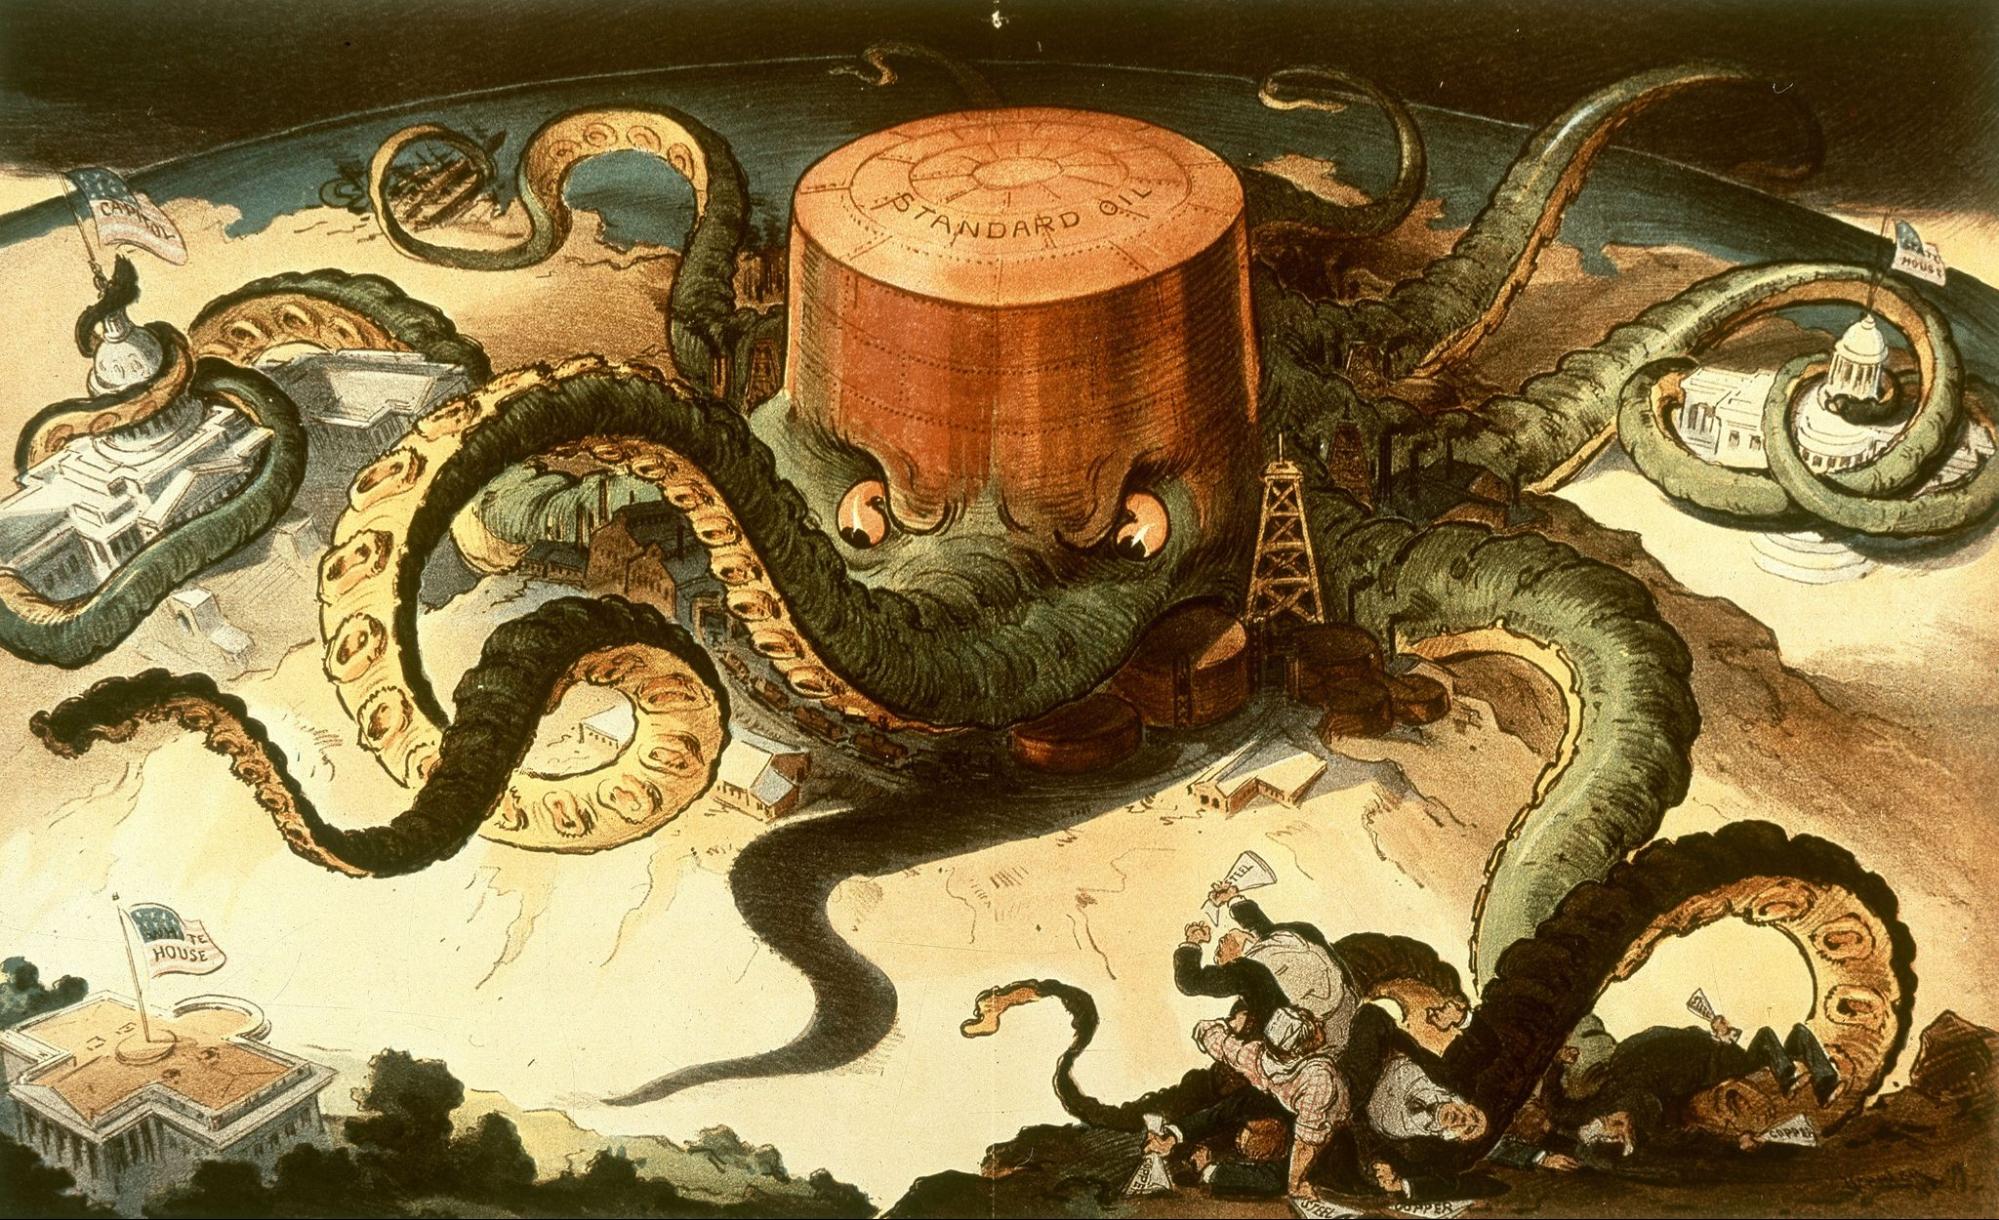 Standard Oil, octopus, Puck